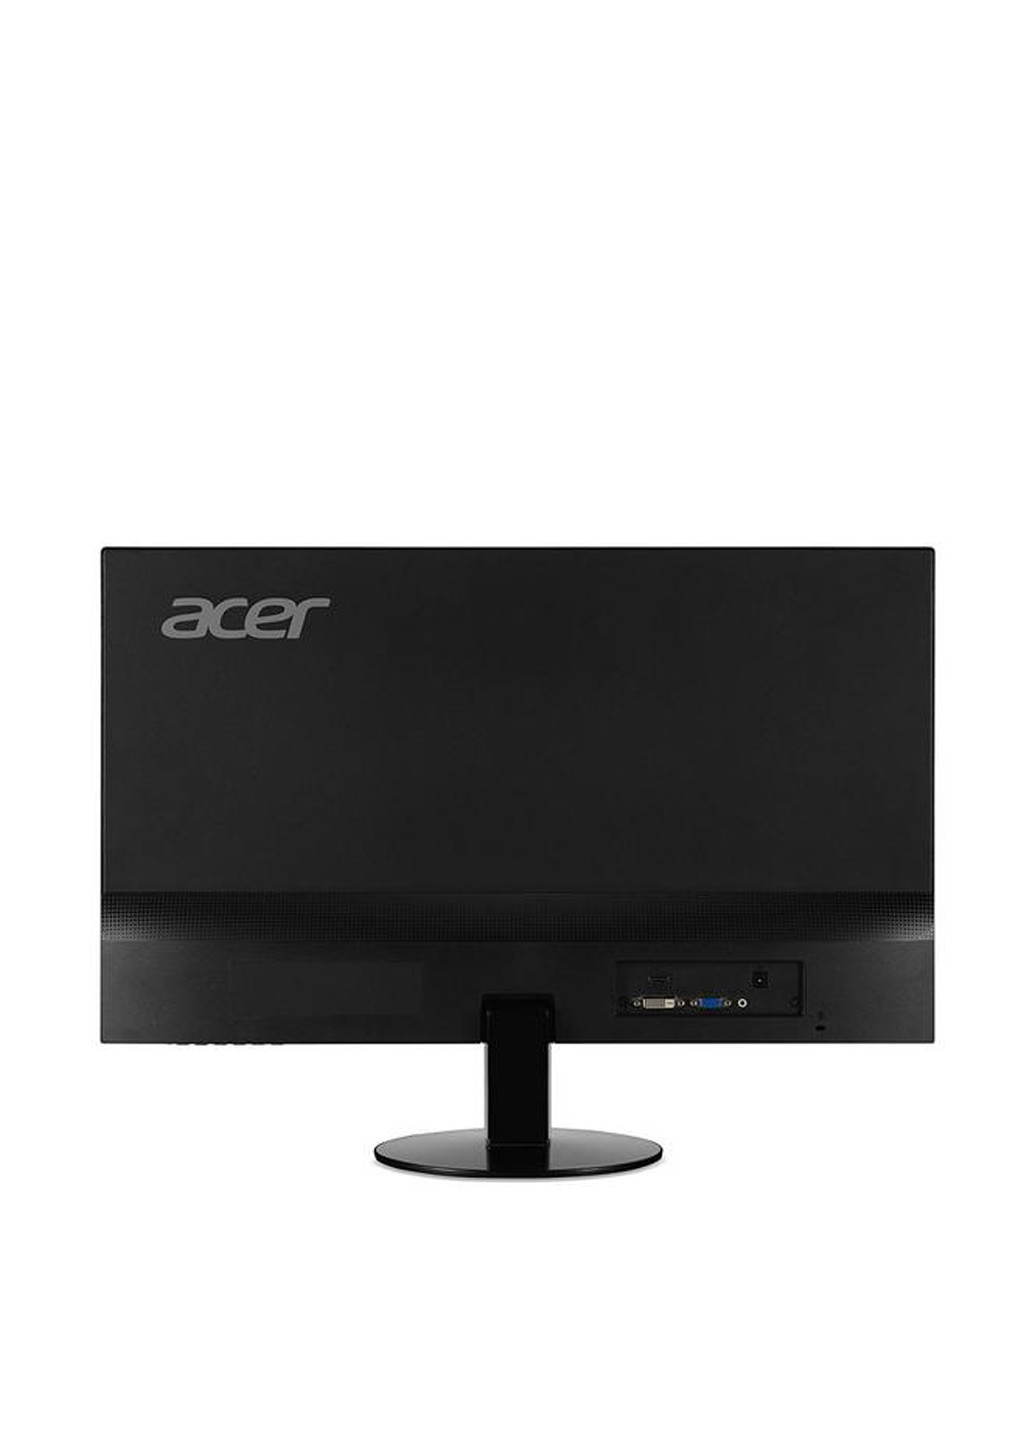 Монитор 23.8" SA240Ybid (UM.QS0EE.001) Acer монитор 23.8" acer sa240ybid (um.qs0ee.001) (130280667)